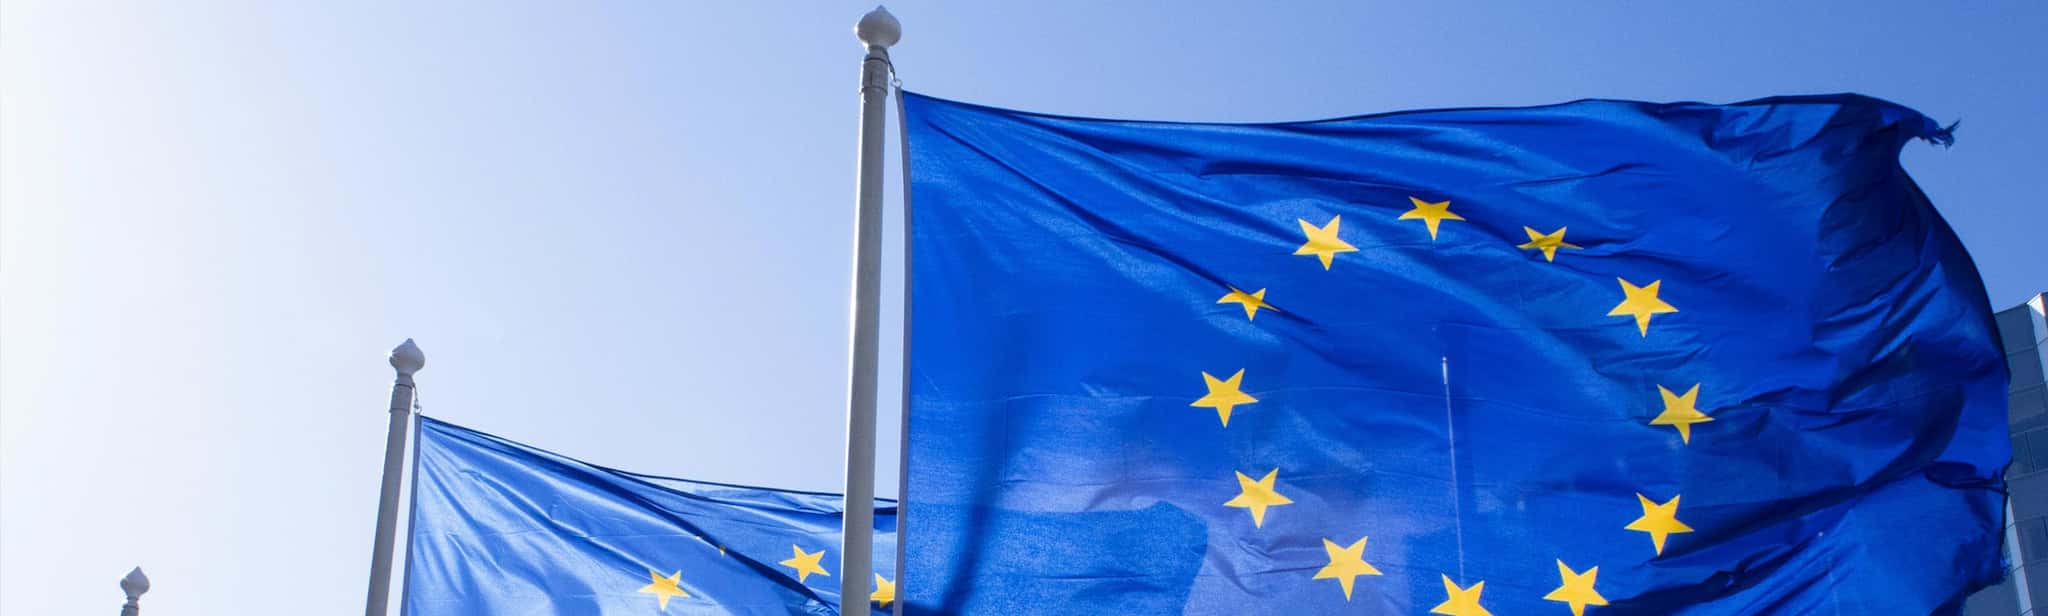 Europaflaggen vor blauem Himmel.